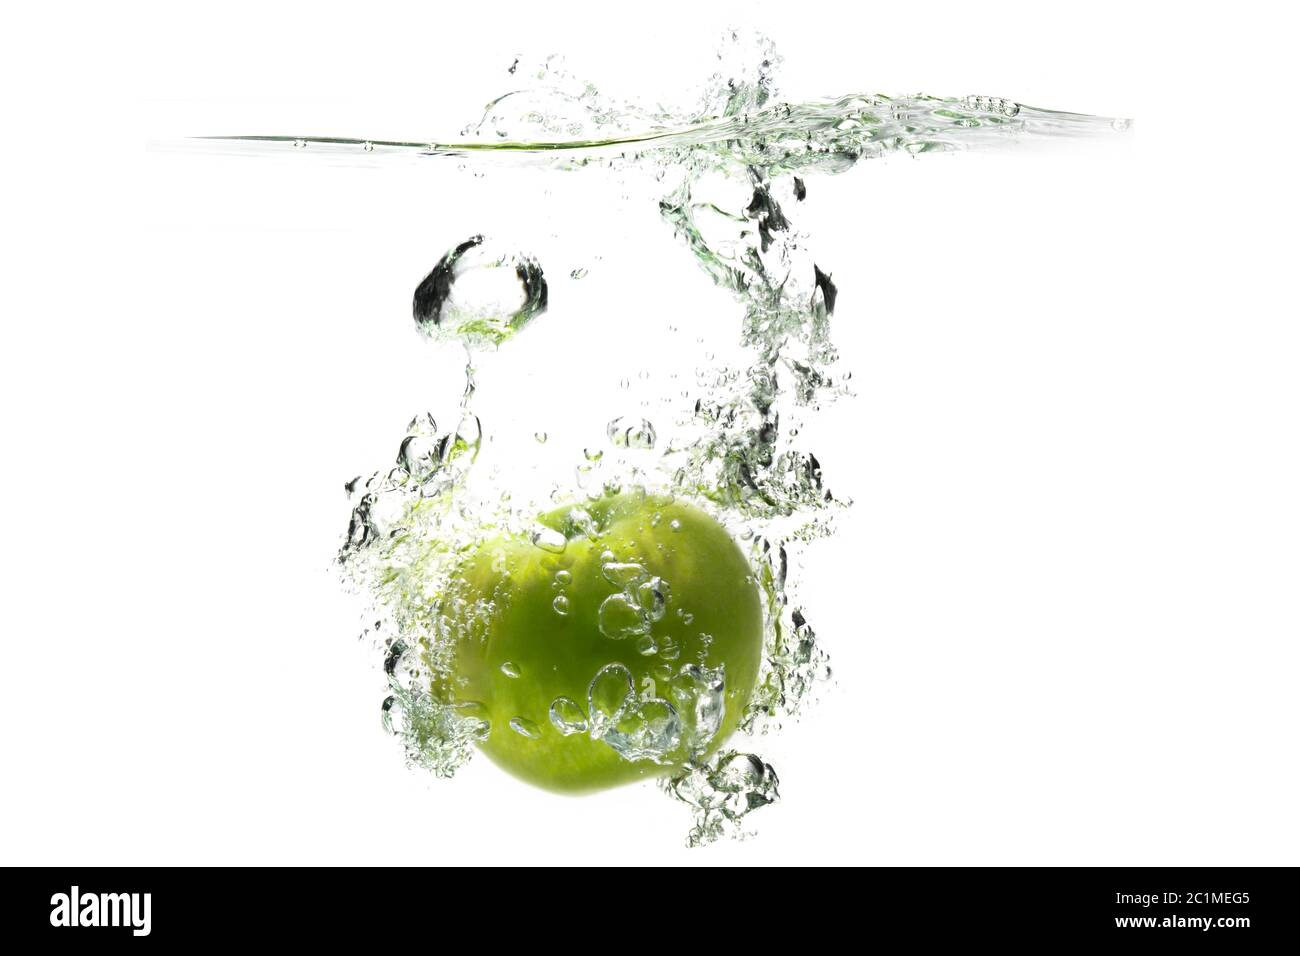 una manzana verde cayendo en el agua sobre un fondo blanco con salpicaduras, gotas y burbujas. Foto de stock